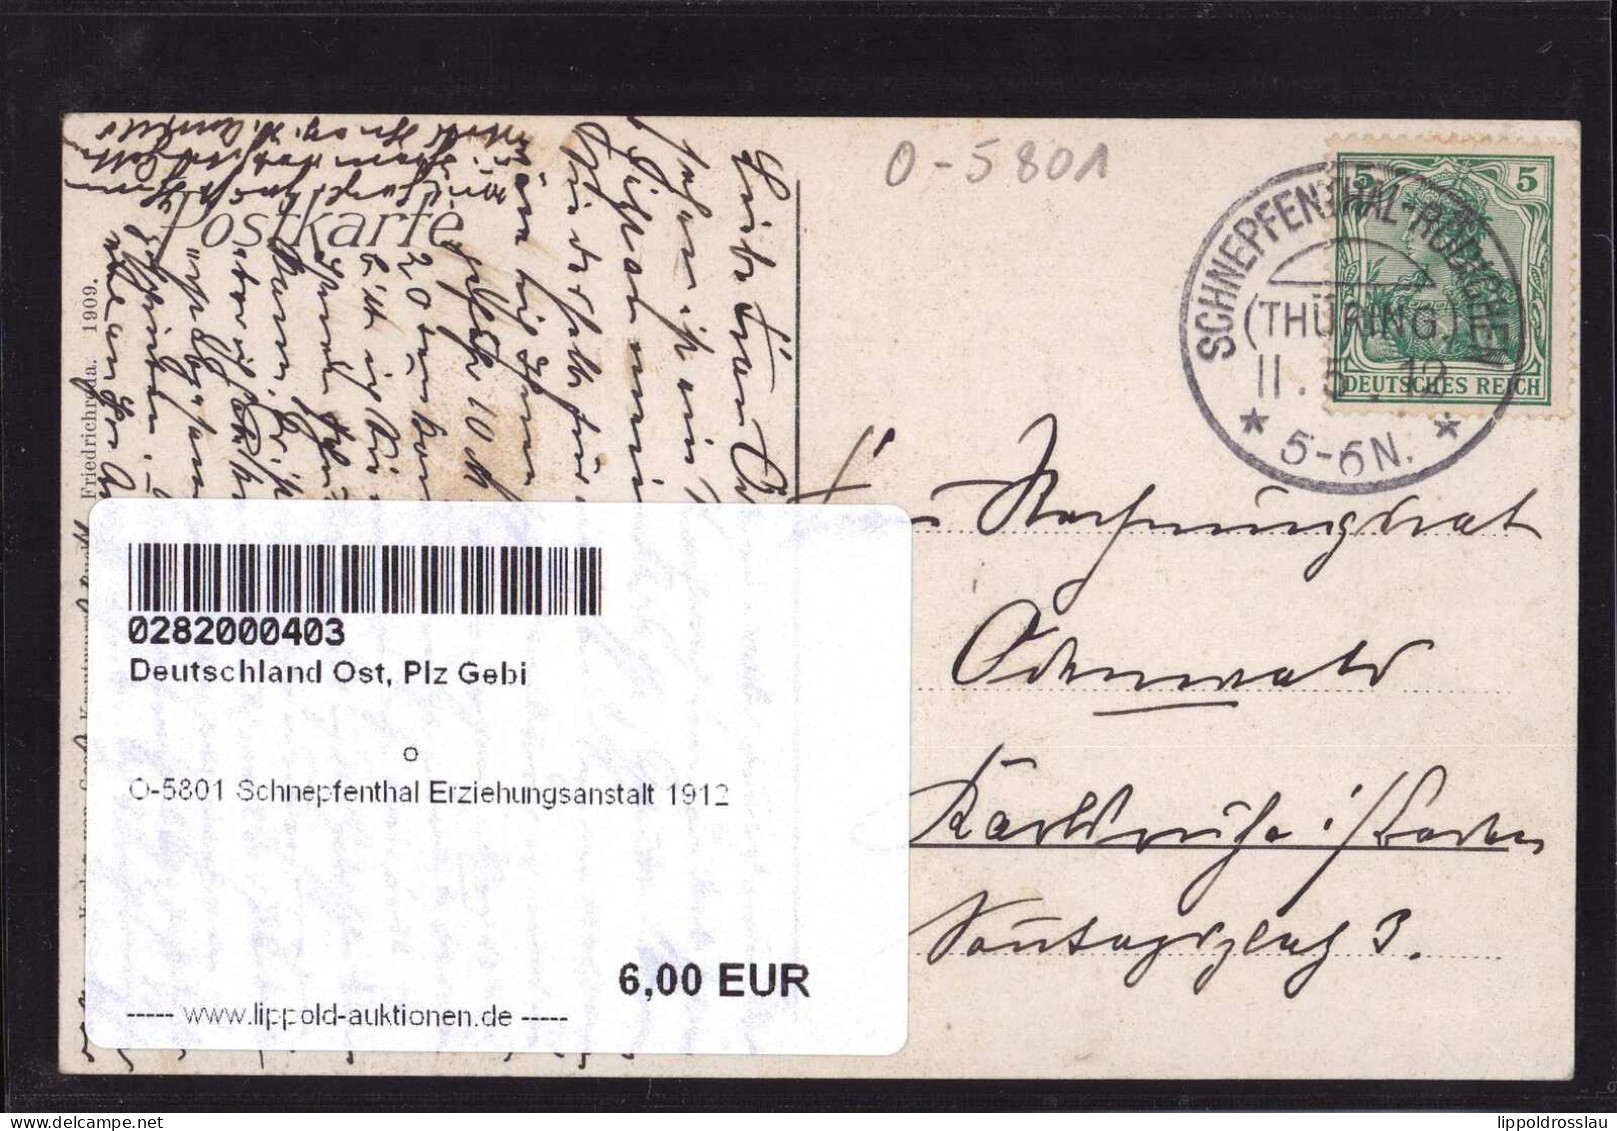 Gest. O-5801 Schnepfenthal Erziehungsanstalt 1912 - Gotha